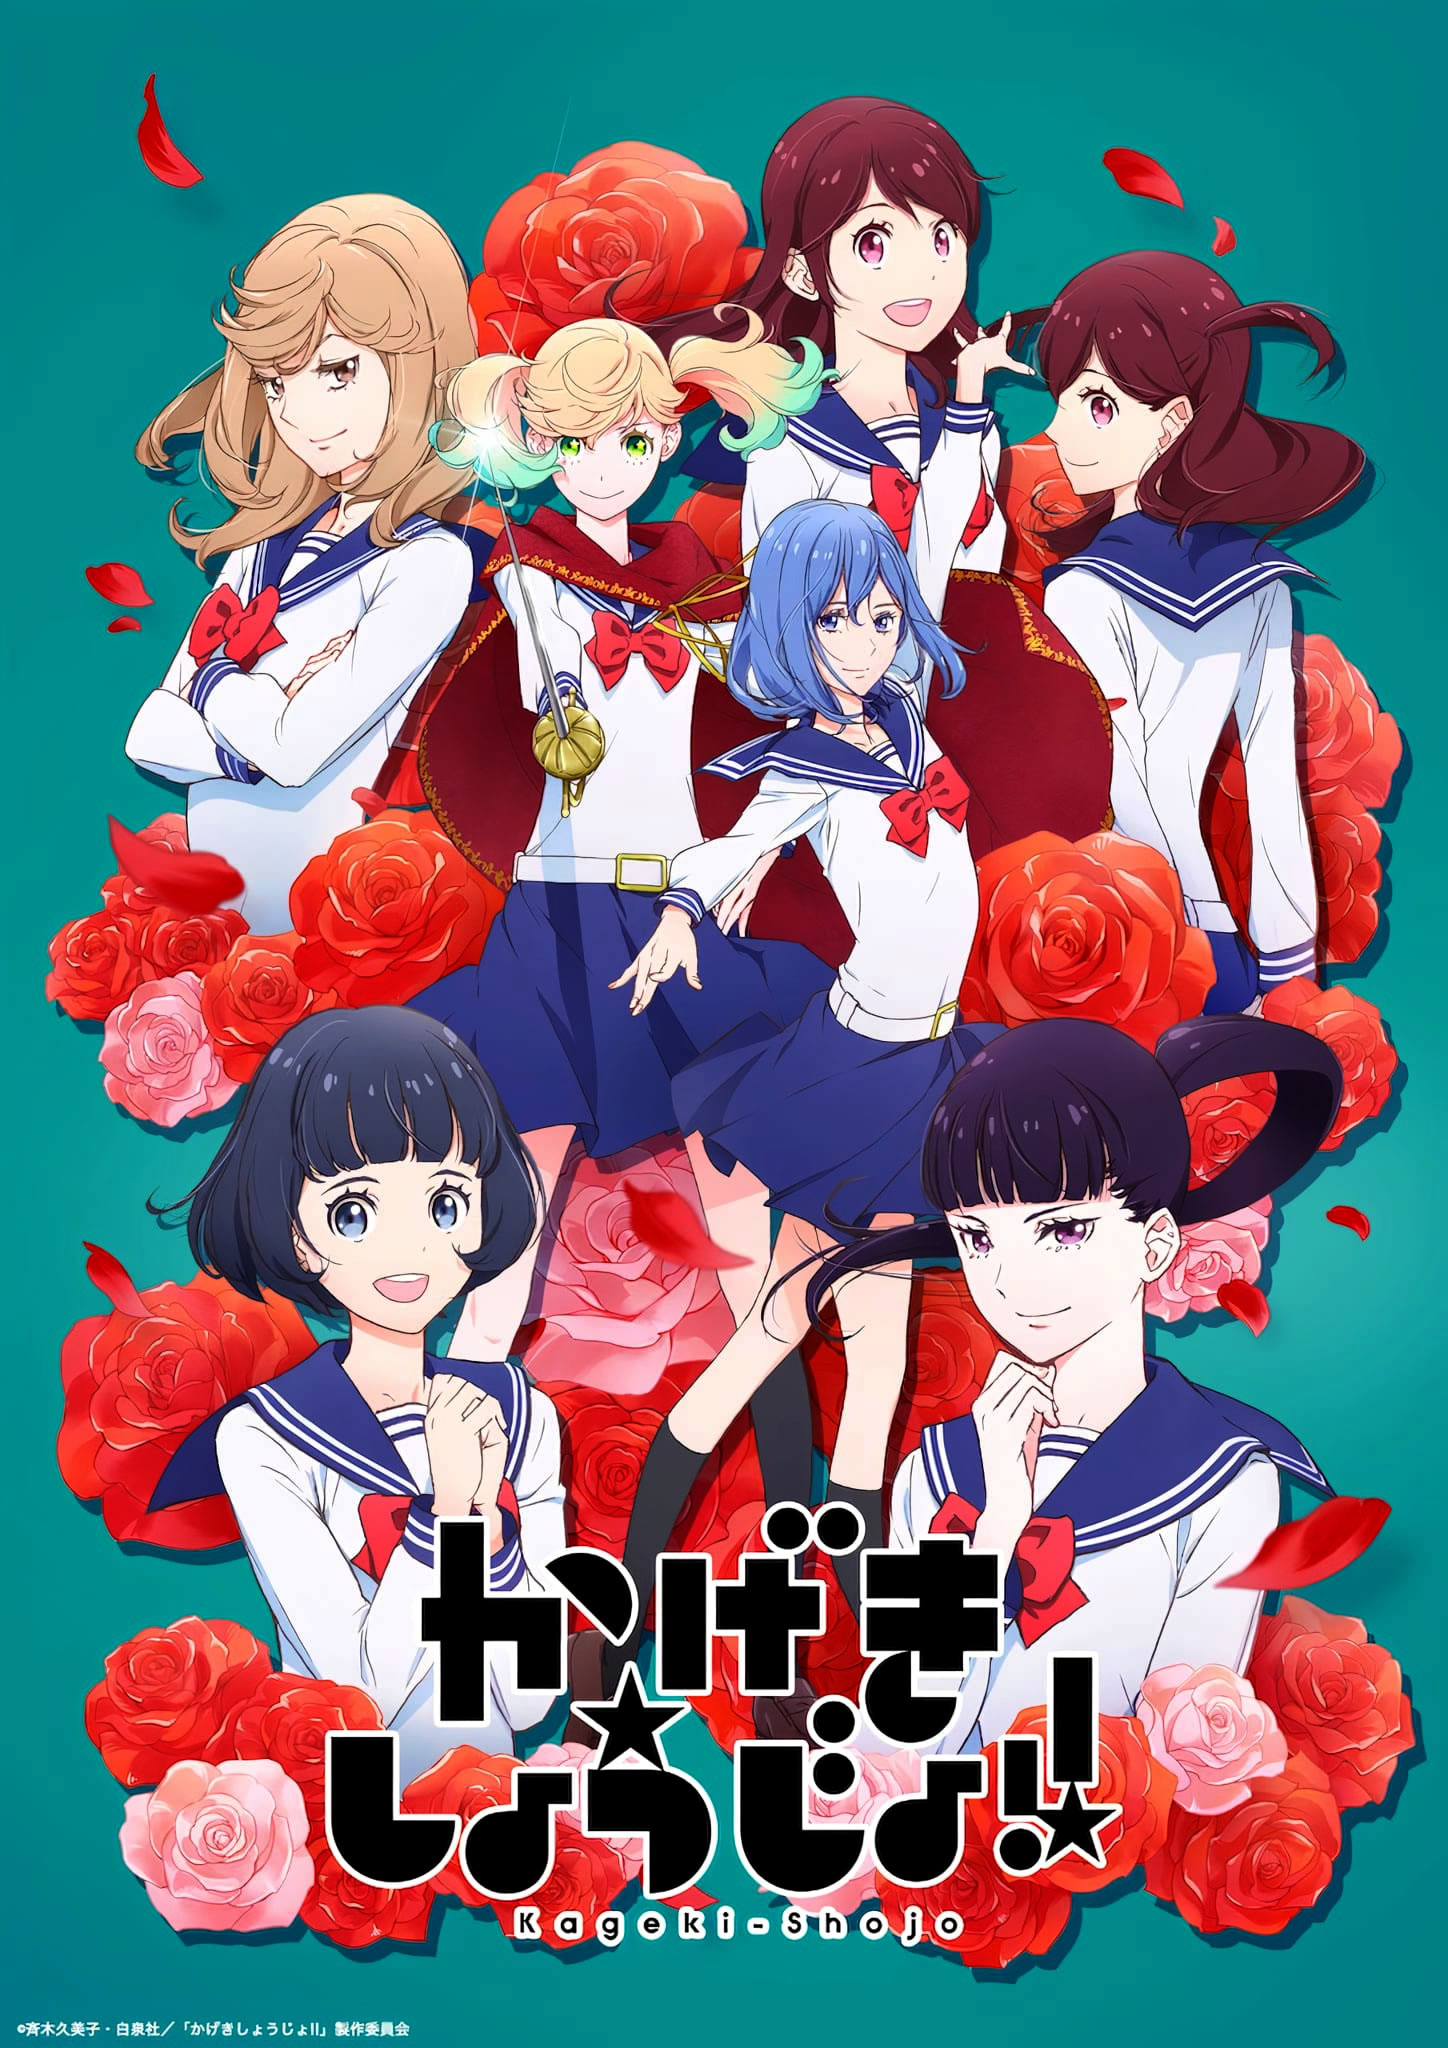 Japão: Canal MBS cria novo bloco de animes Super Animeism » Anime Xis